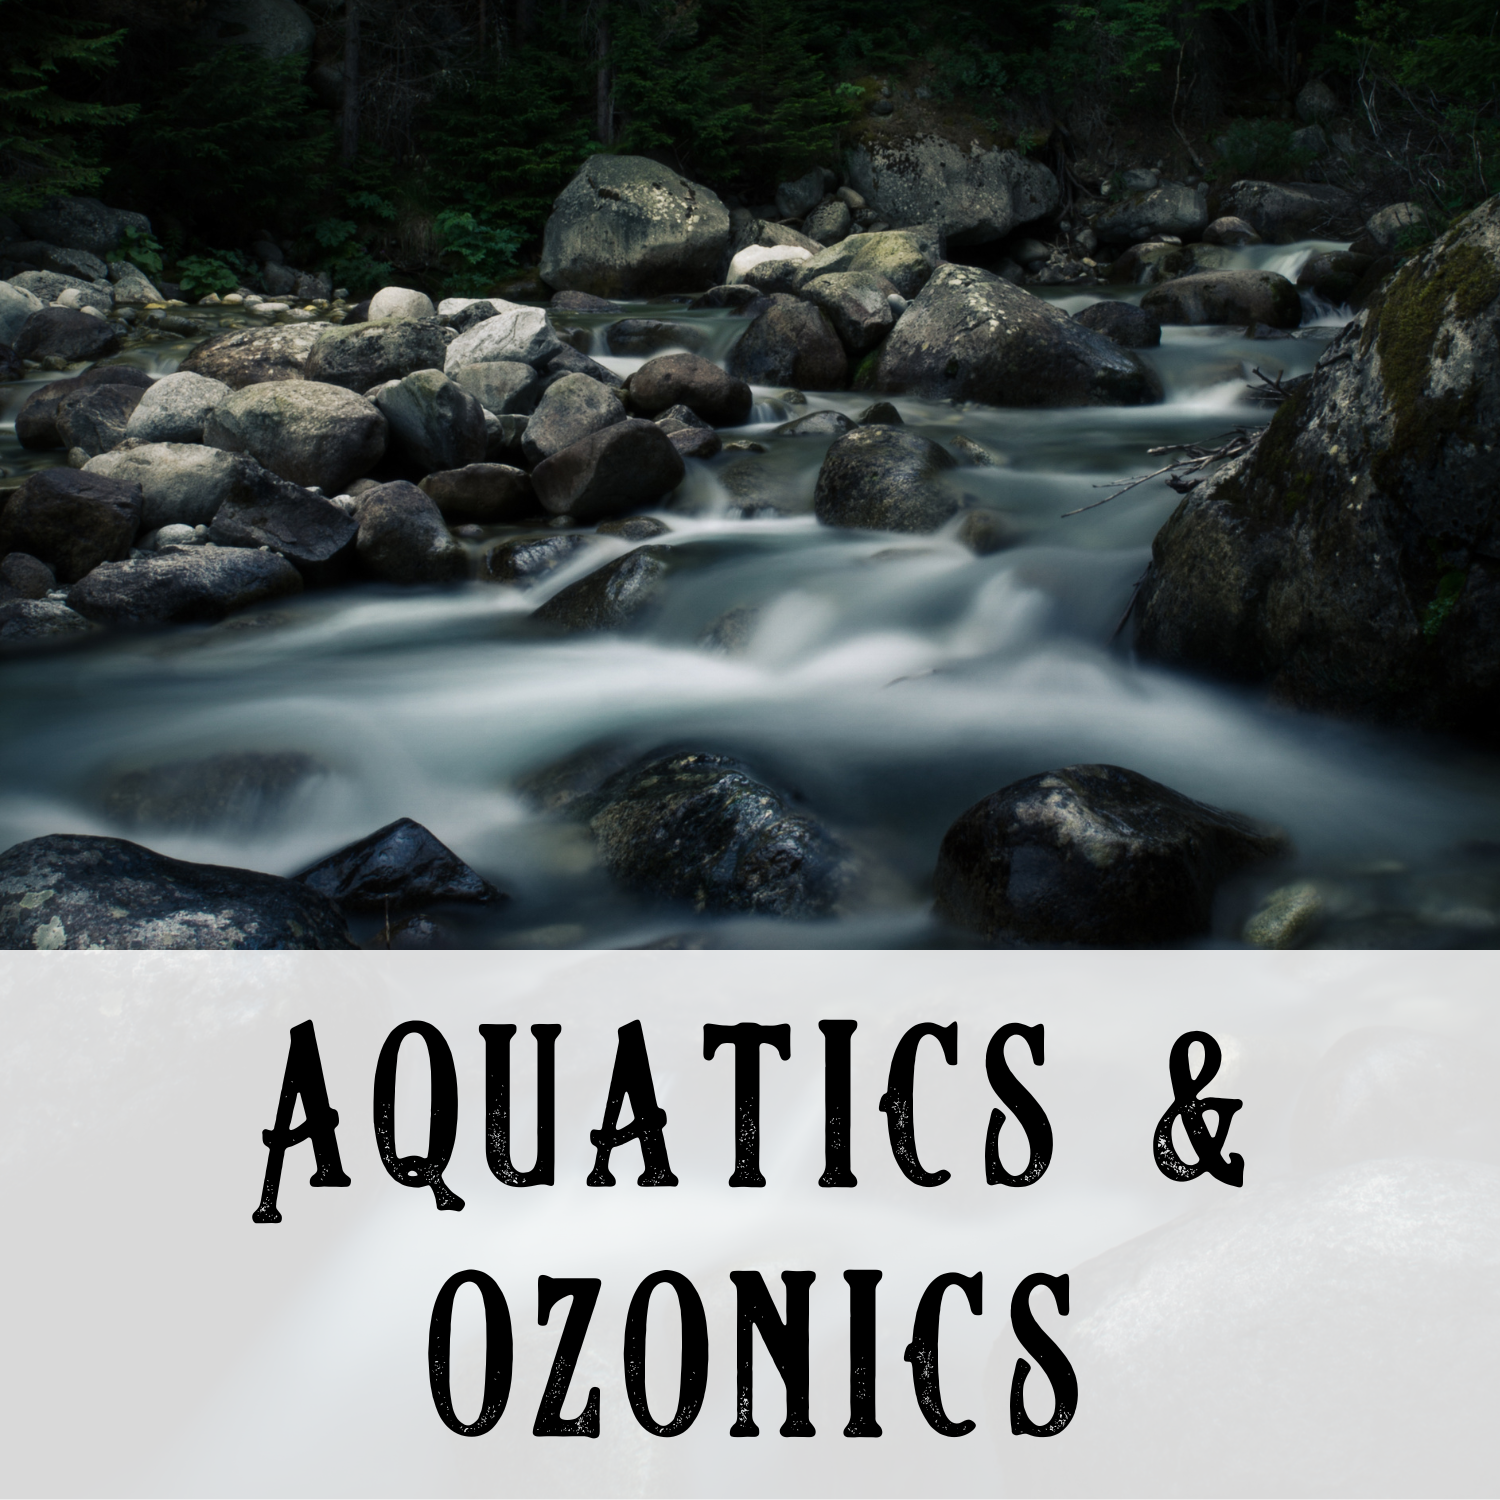 Aquatic & Ozonic